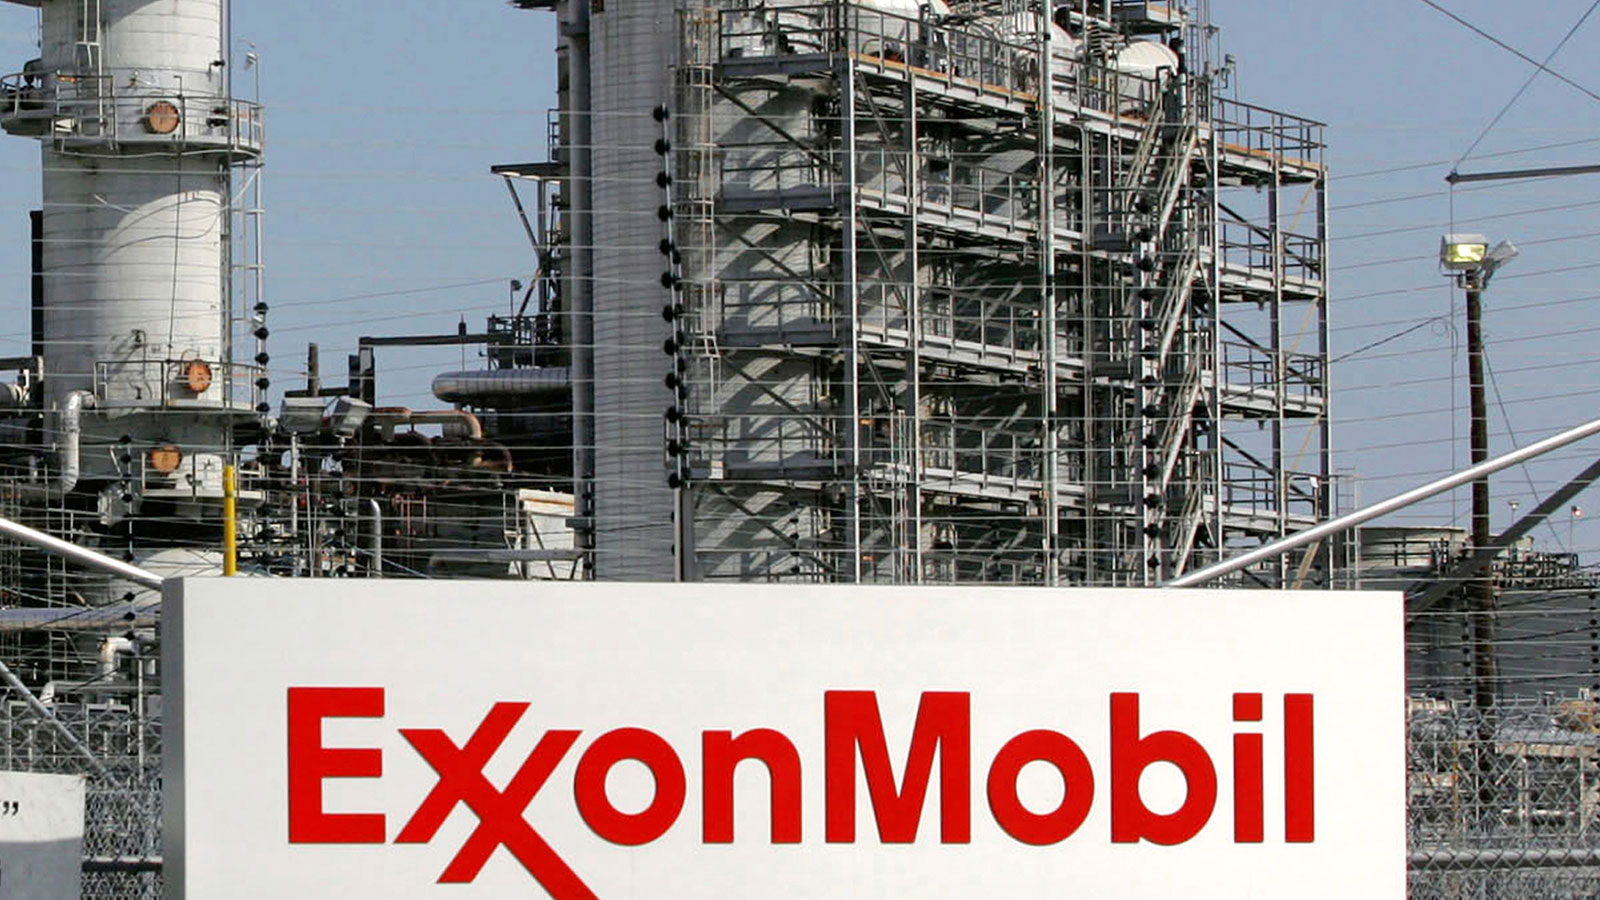 An Exxon Mobil refinery